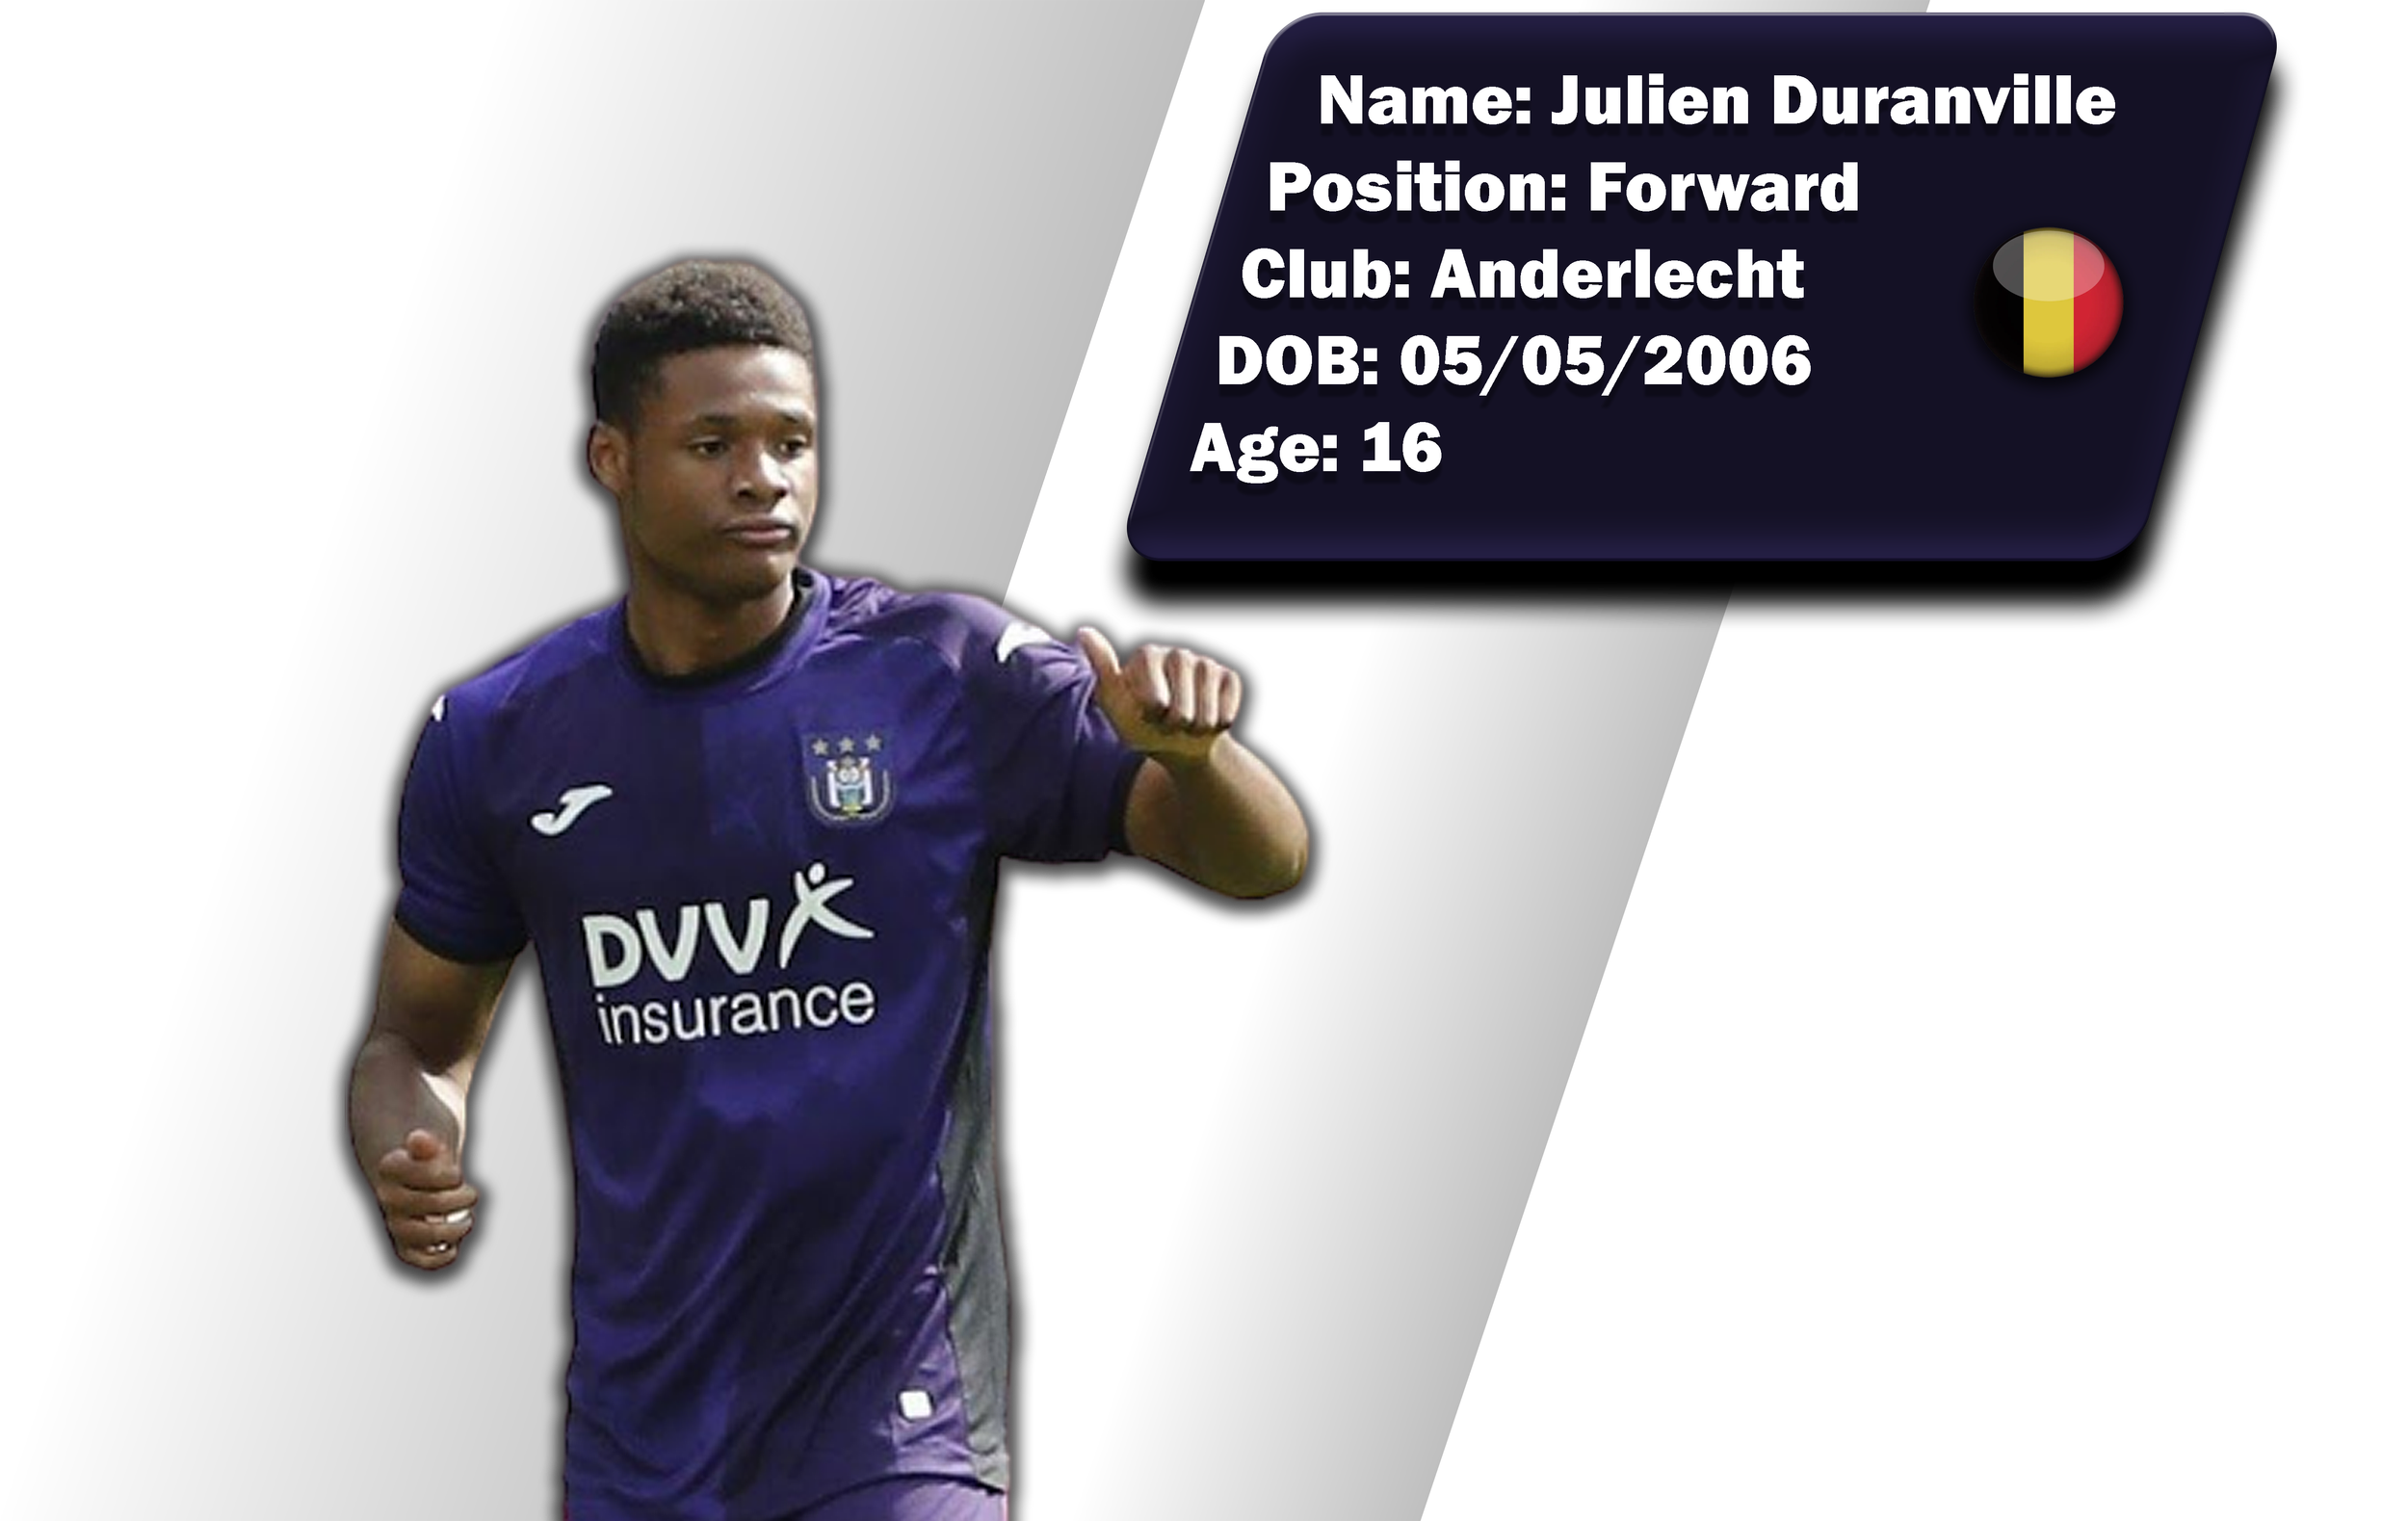 Duranville next to Lukaku in Anderlecht's Jupiler Pro League ranks